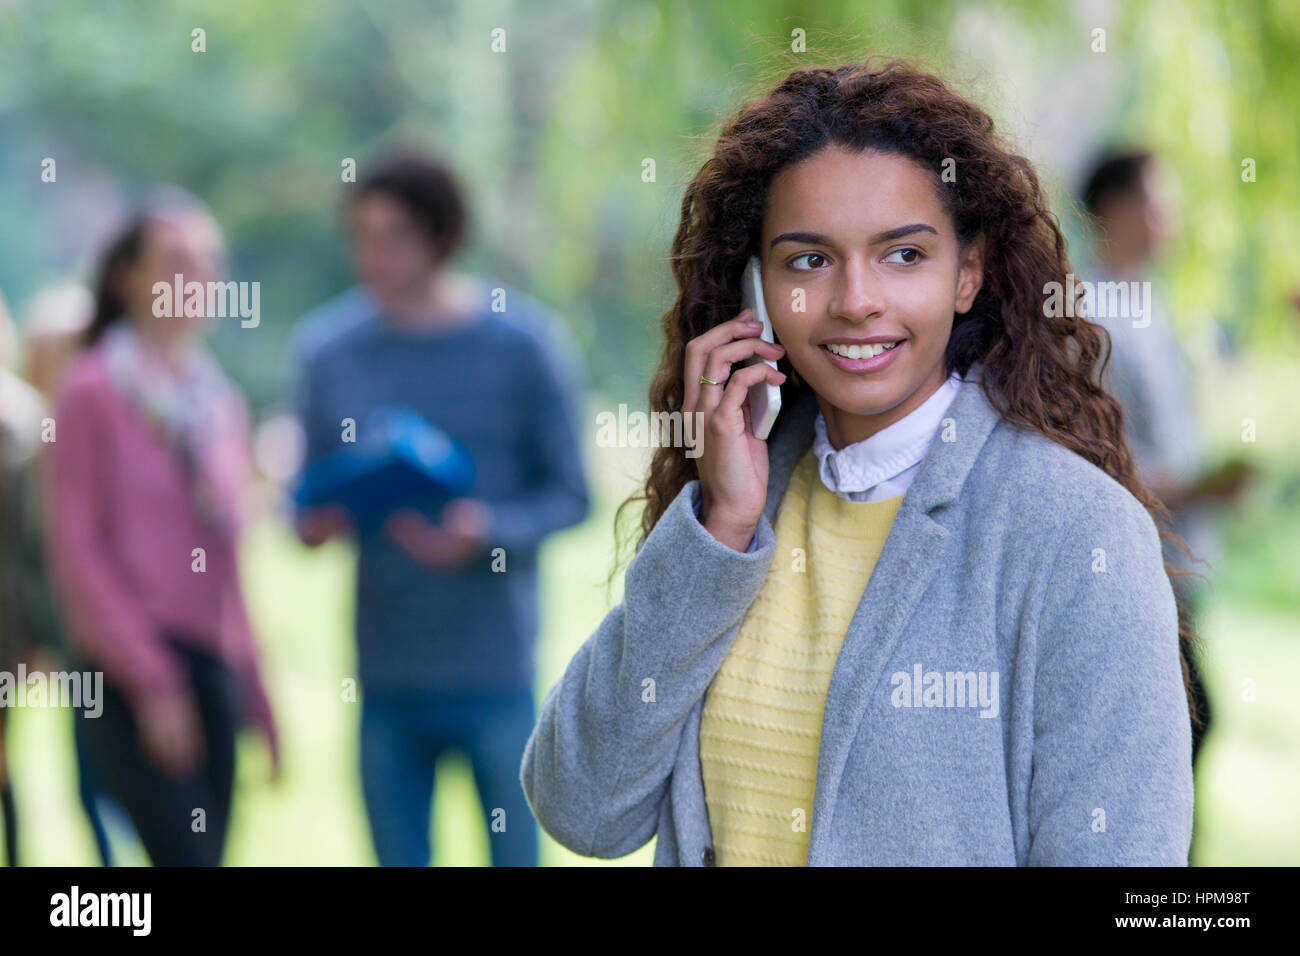 Un joven estudiante feliz sonríe mientras utiliza su teléfono móvil al aire libre. Ella está envuelto en una capa gruesa. Un grupo de estudiantes que están fuera de foco en el BAC Foto de stock